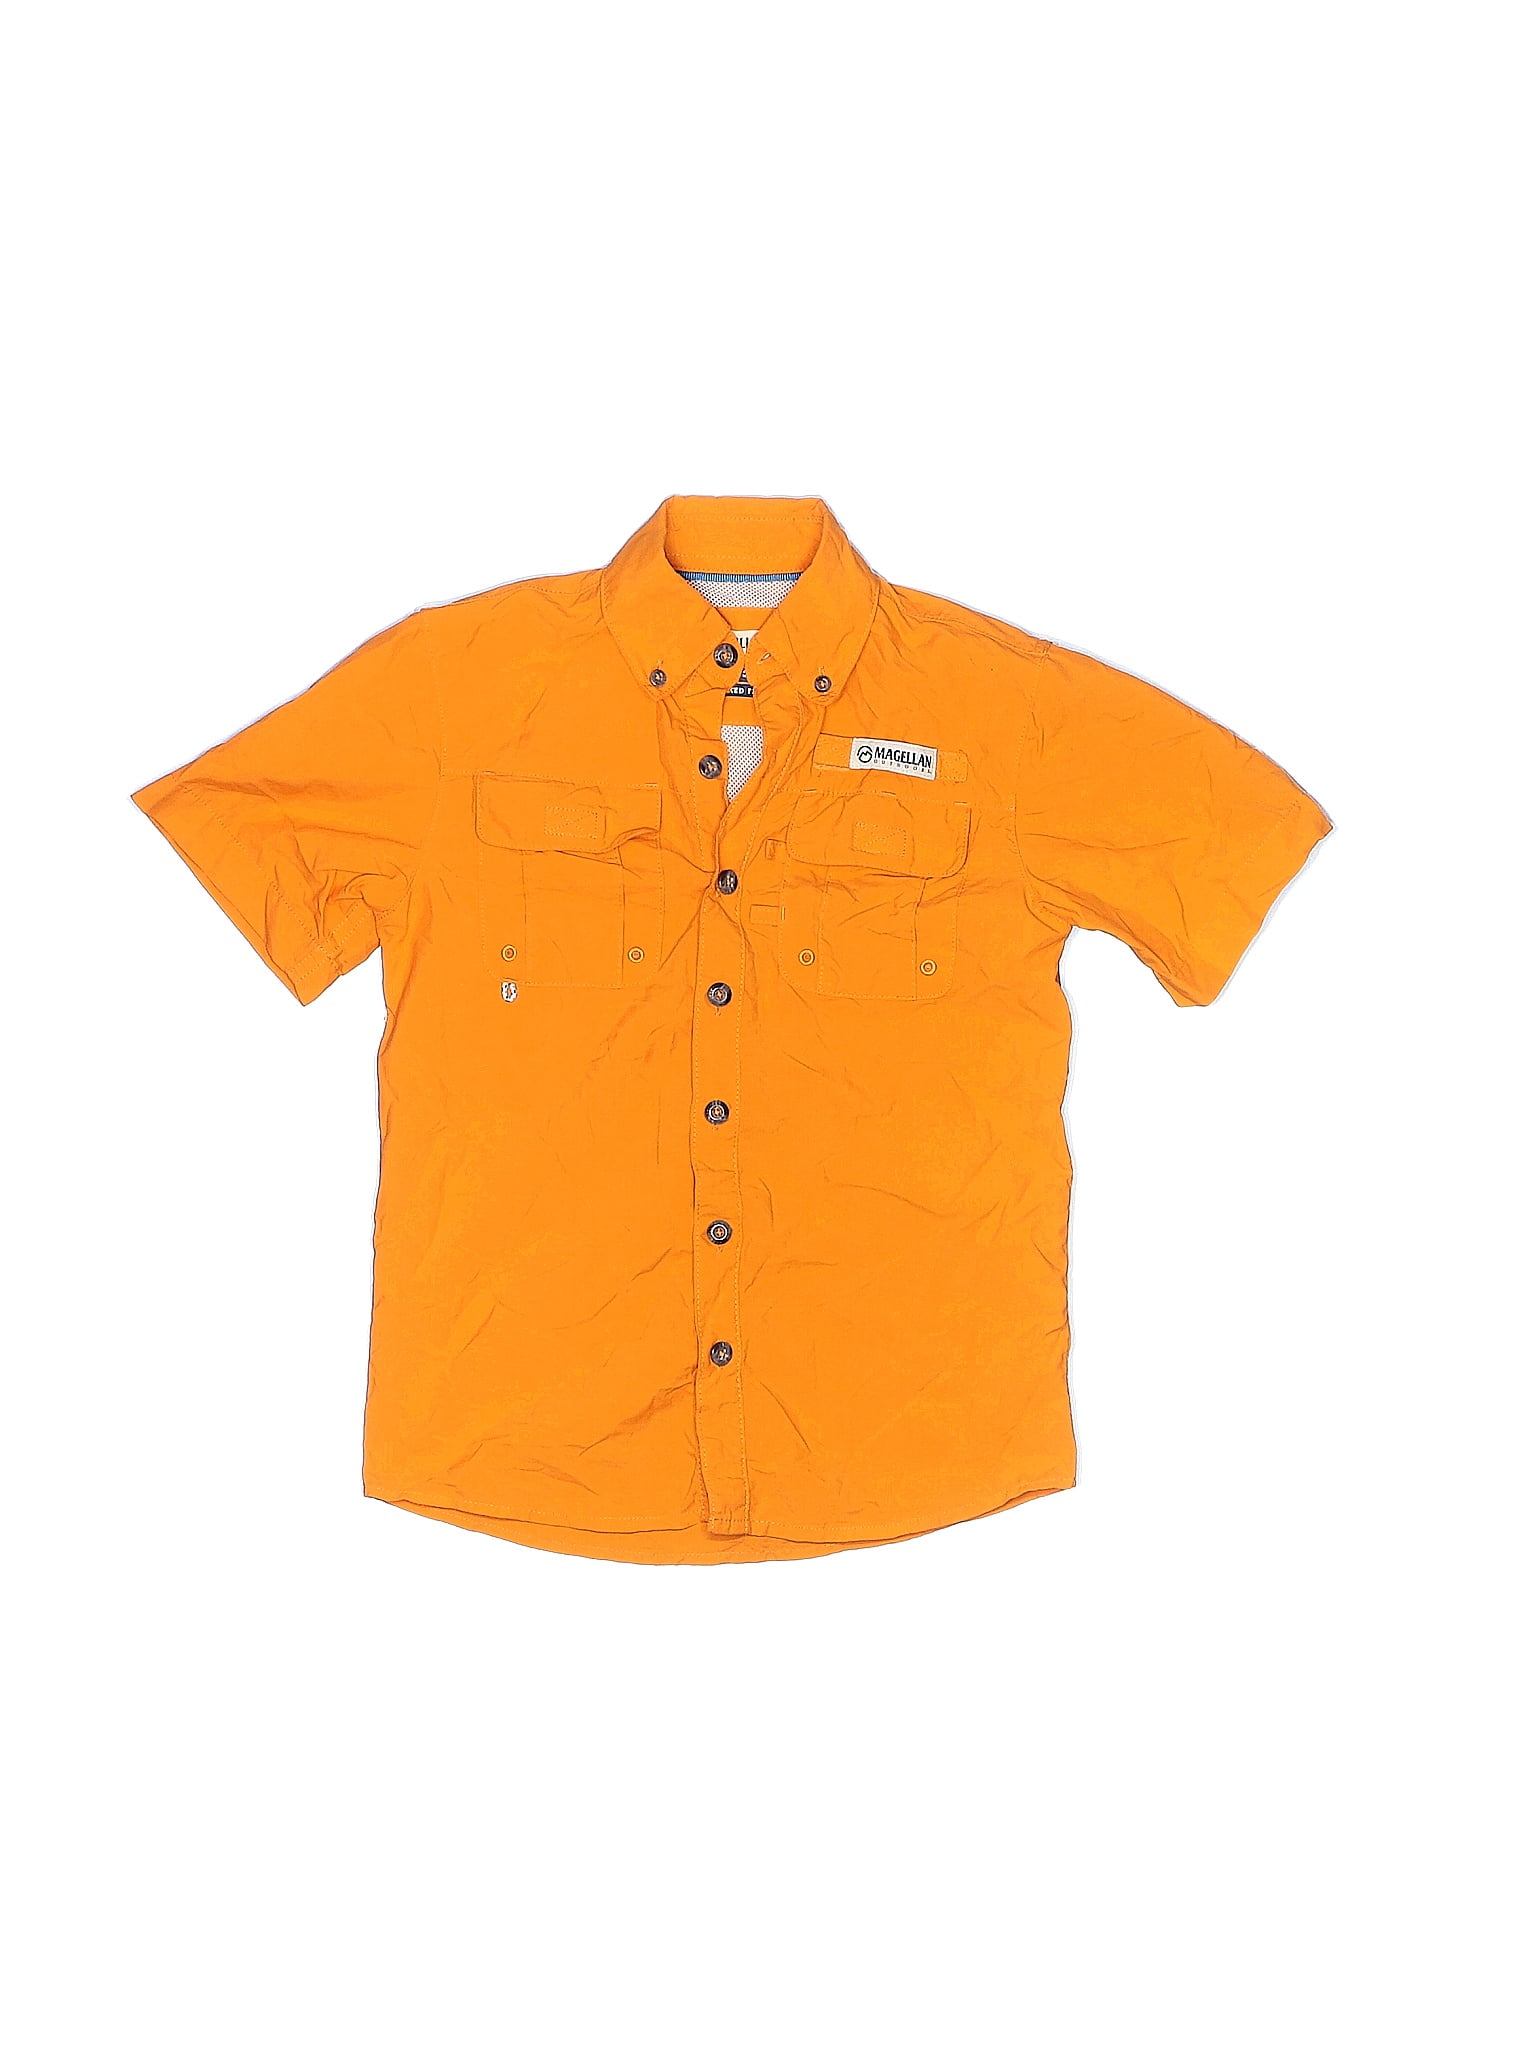 Magellan mens shirt orange - Gem